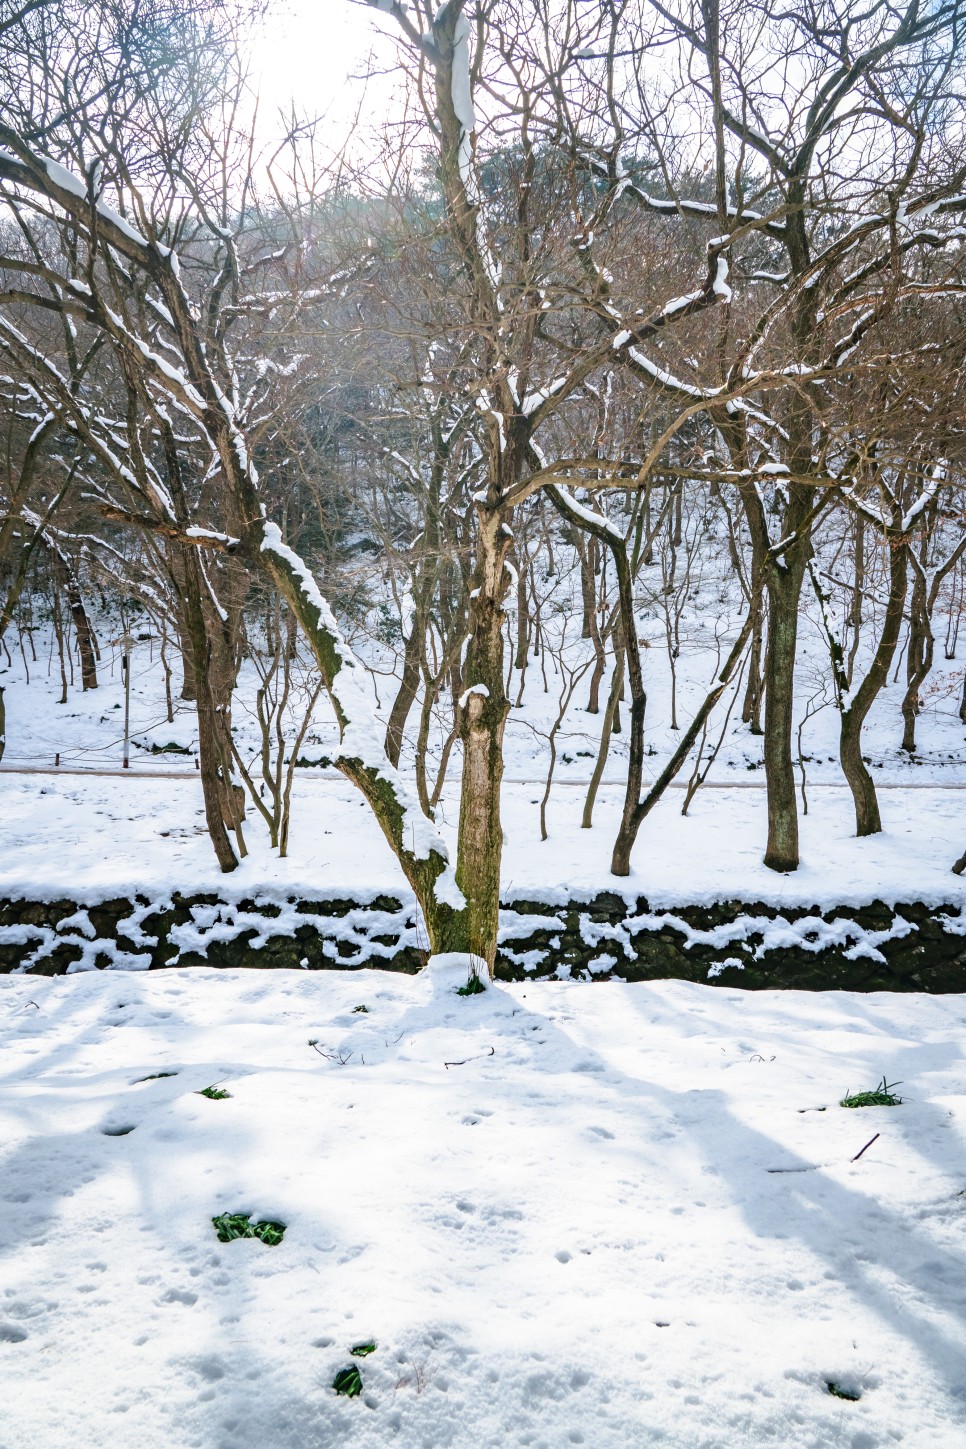 전남 영광 꽃무릇 명소 불갑사 겨울 눈 덮인 풍경